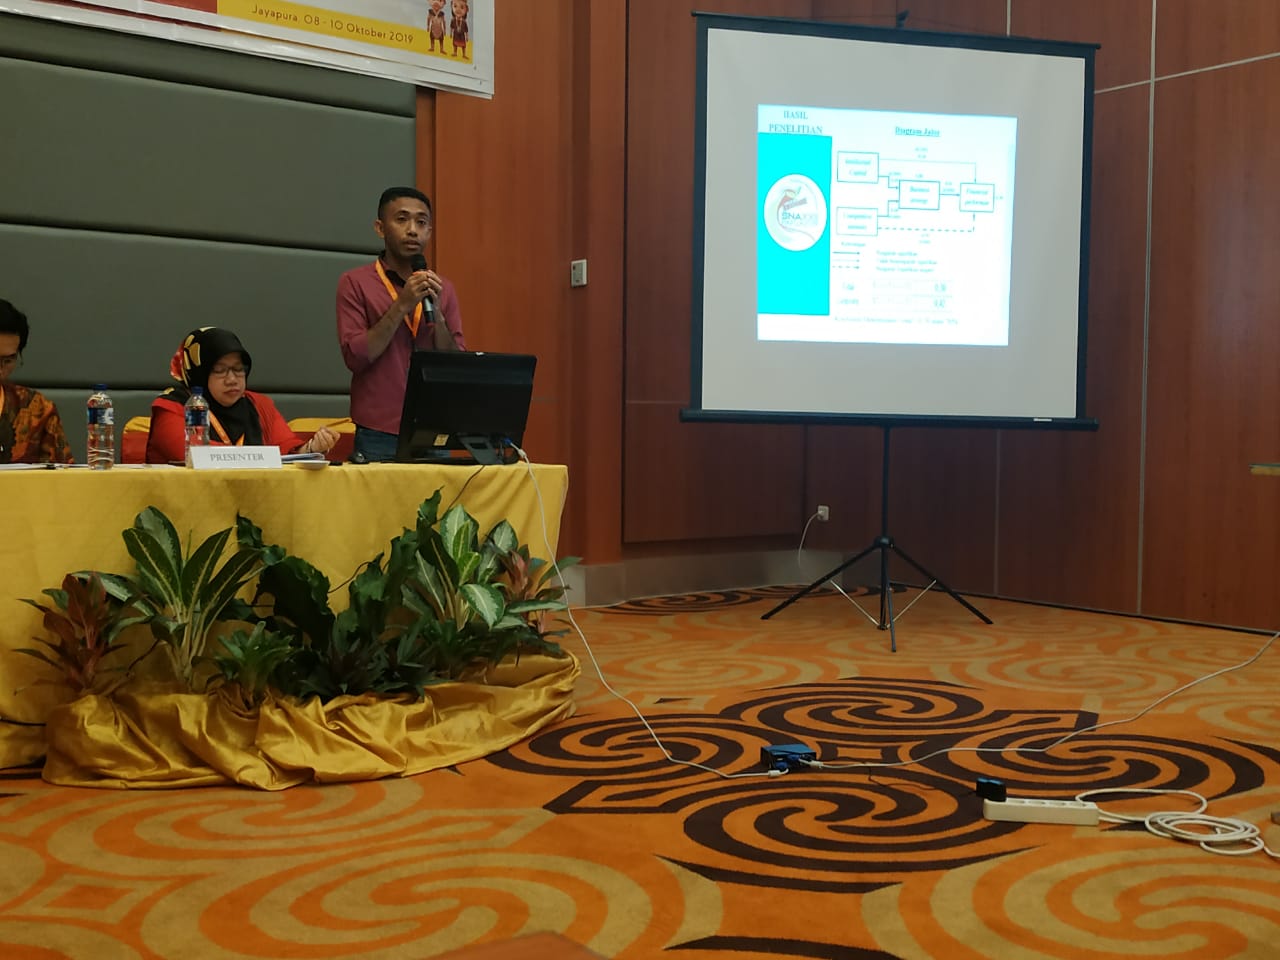 Longginus Gelatan Presentasikan Tesis Dalam Simposium Nasional Akuntansi 2019 di Papua